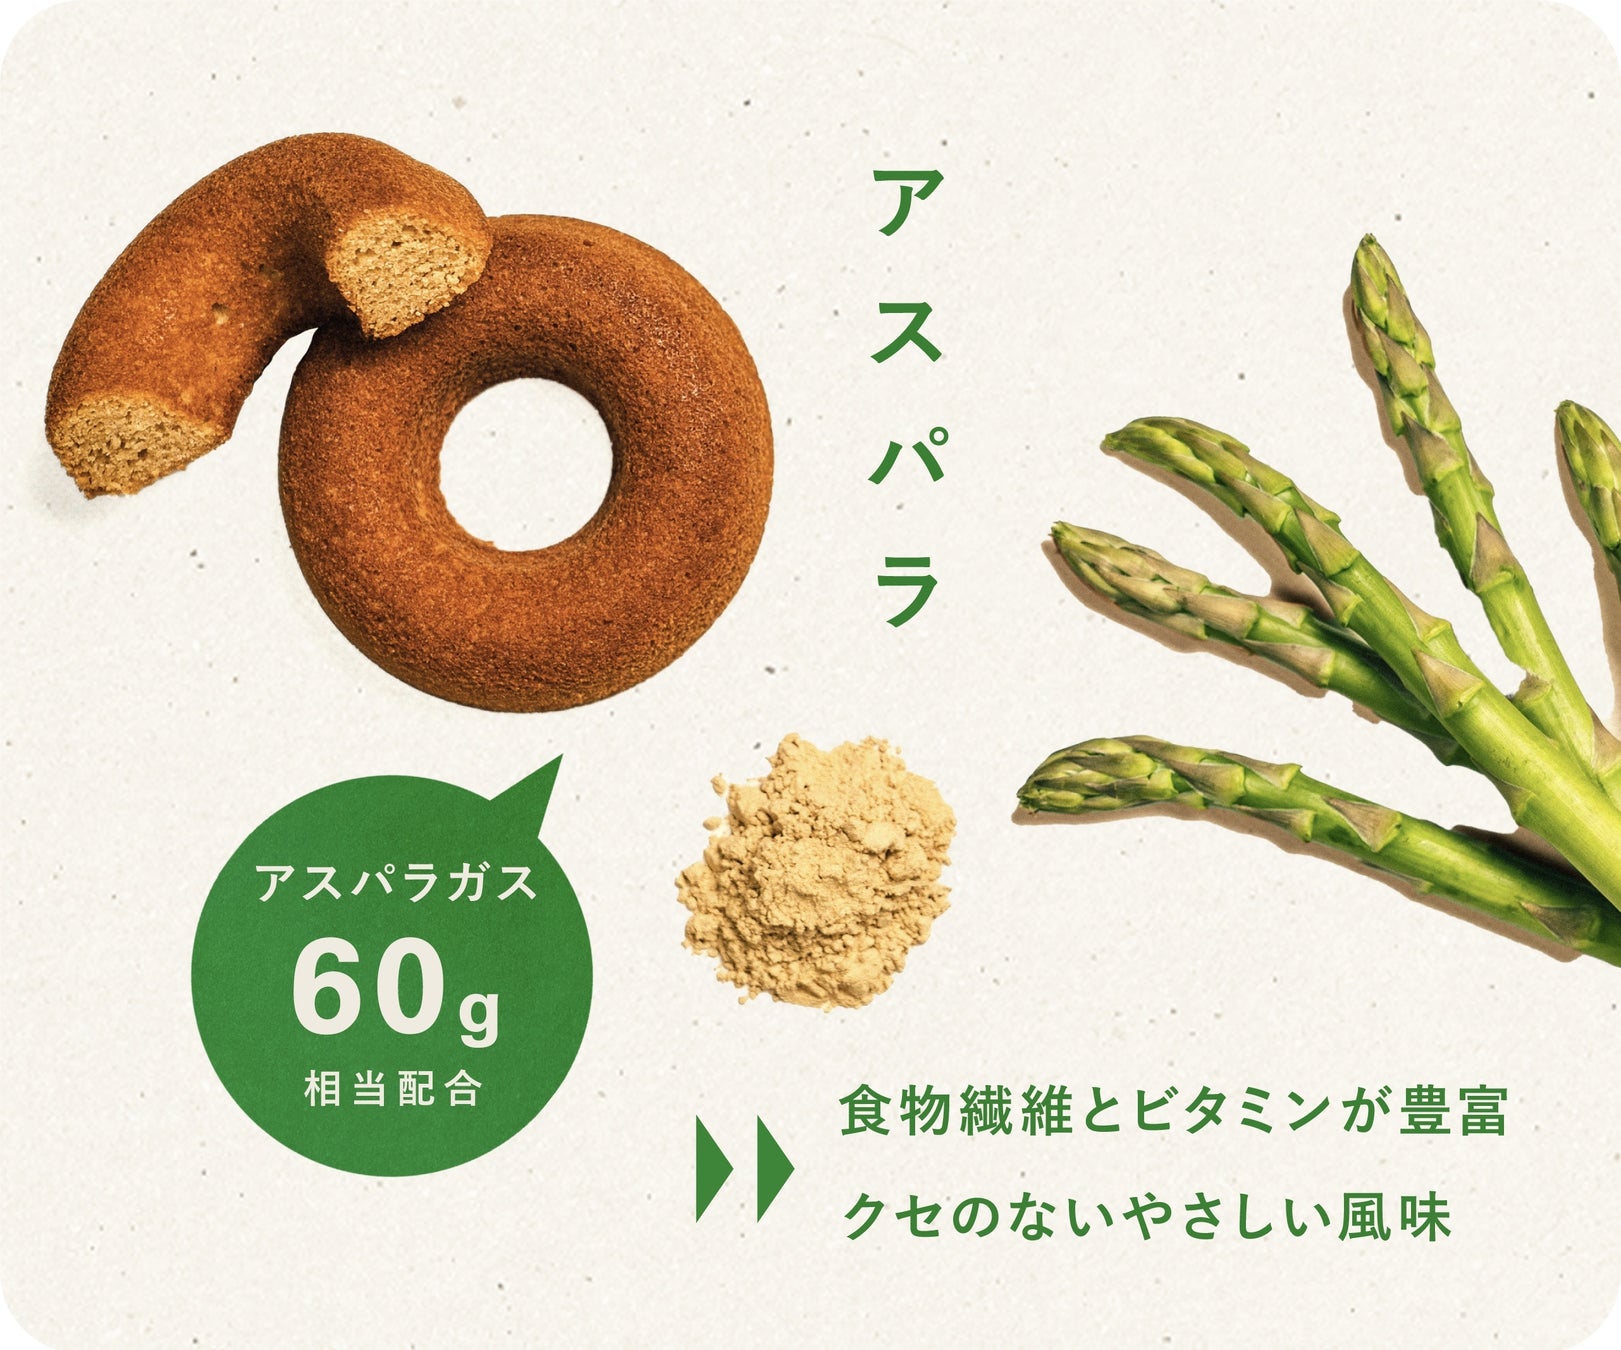 廃棄予定の規格外野菜とおからを用いたアップサイクルドーナツを開発。Makuakeにて発売開始〈OKARAT〉のサブ画像6